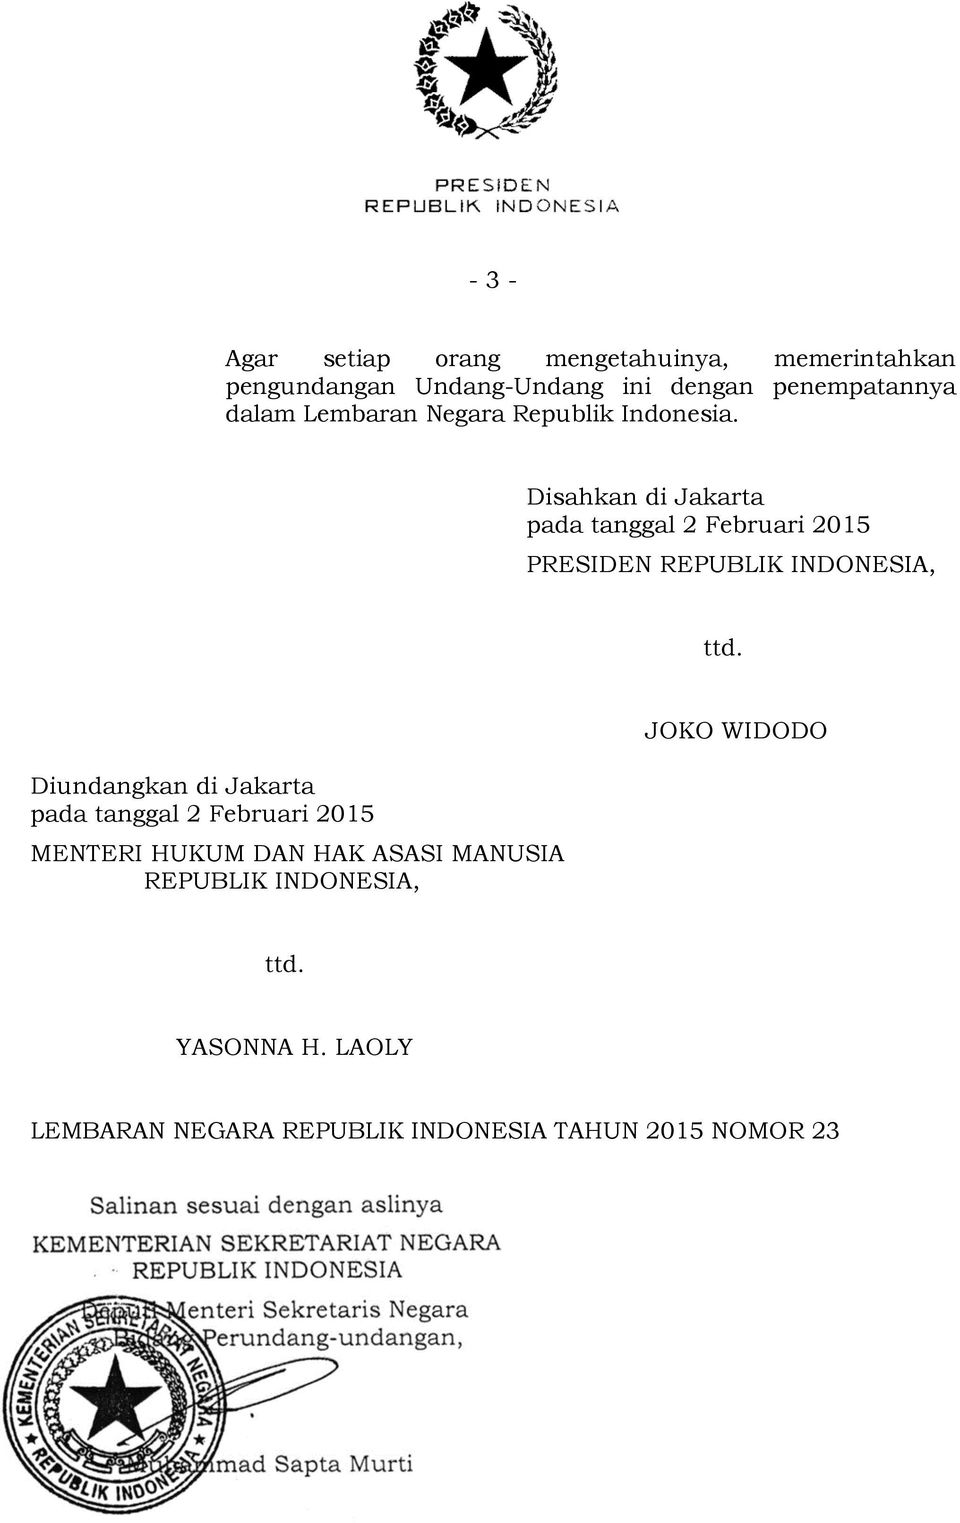 Disahkan di Jakarta pada tanggal 2 Februari 2015 PRESIDEN REPUBLIK INDONESIA, ttd.